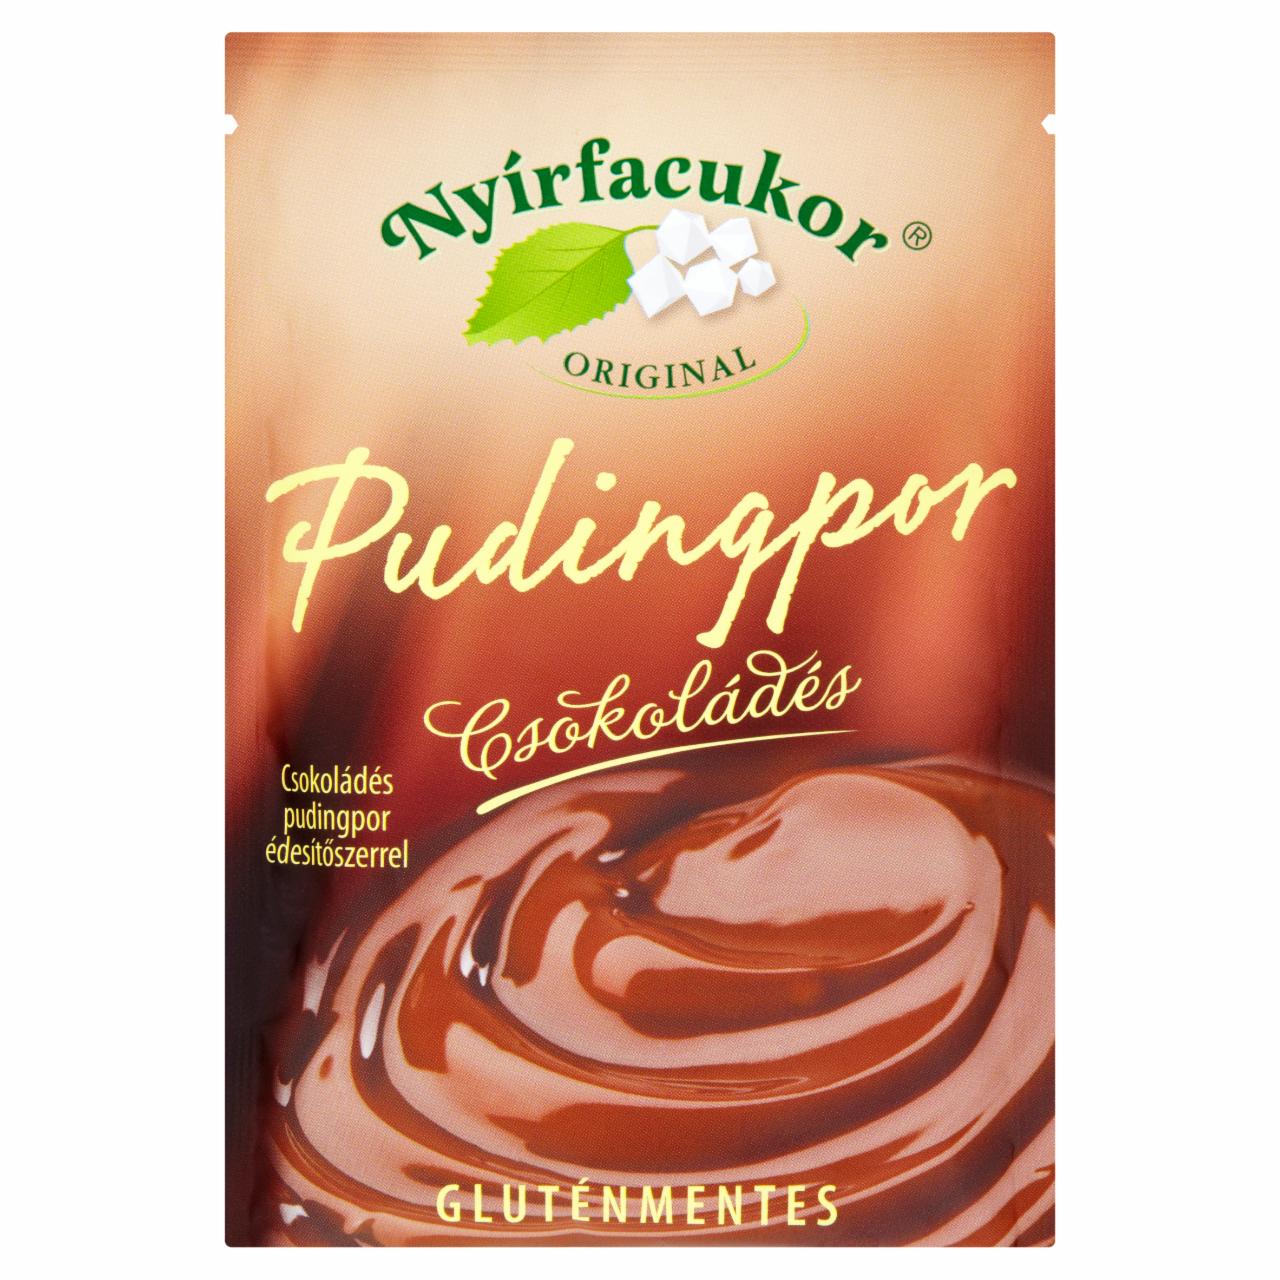 Képek - Nyírfacukor Original gluténmentes csokoládés pudingpor édesítőszerrel 100 g